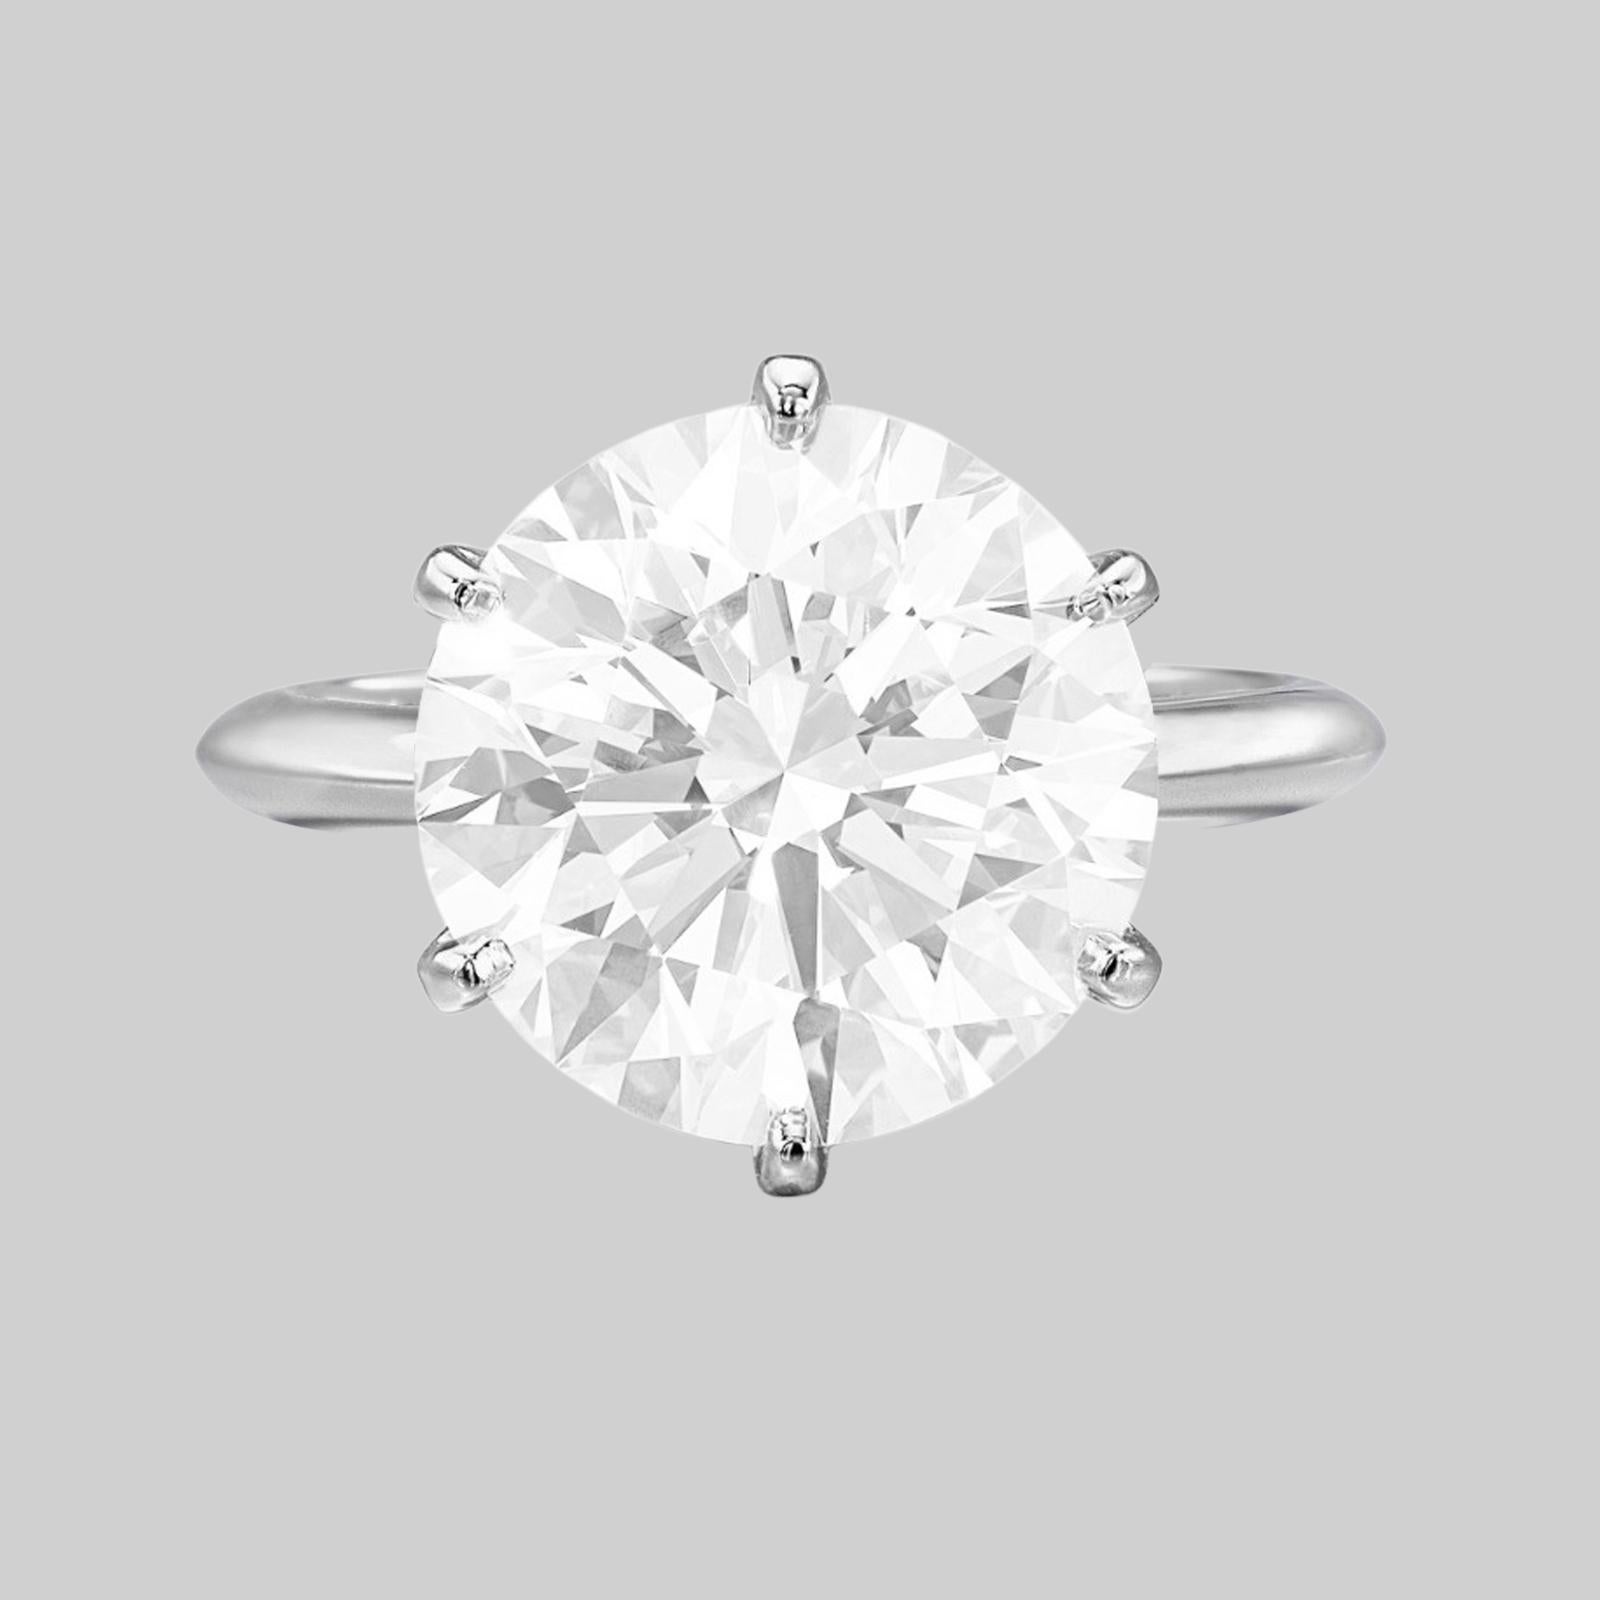 4.5 carat diamond ring price